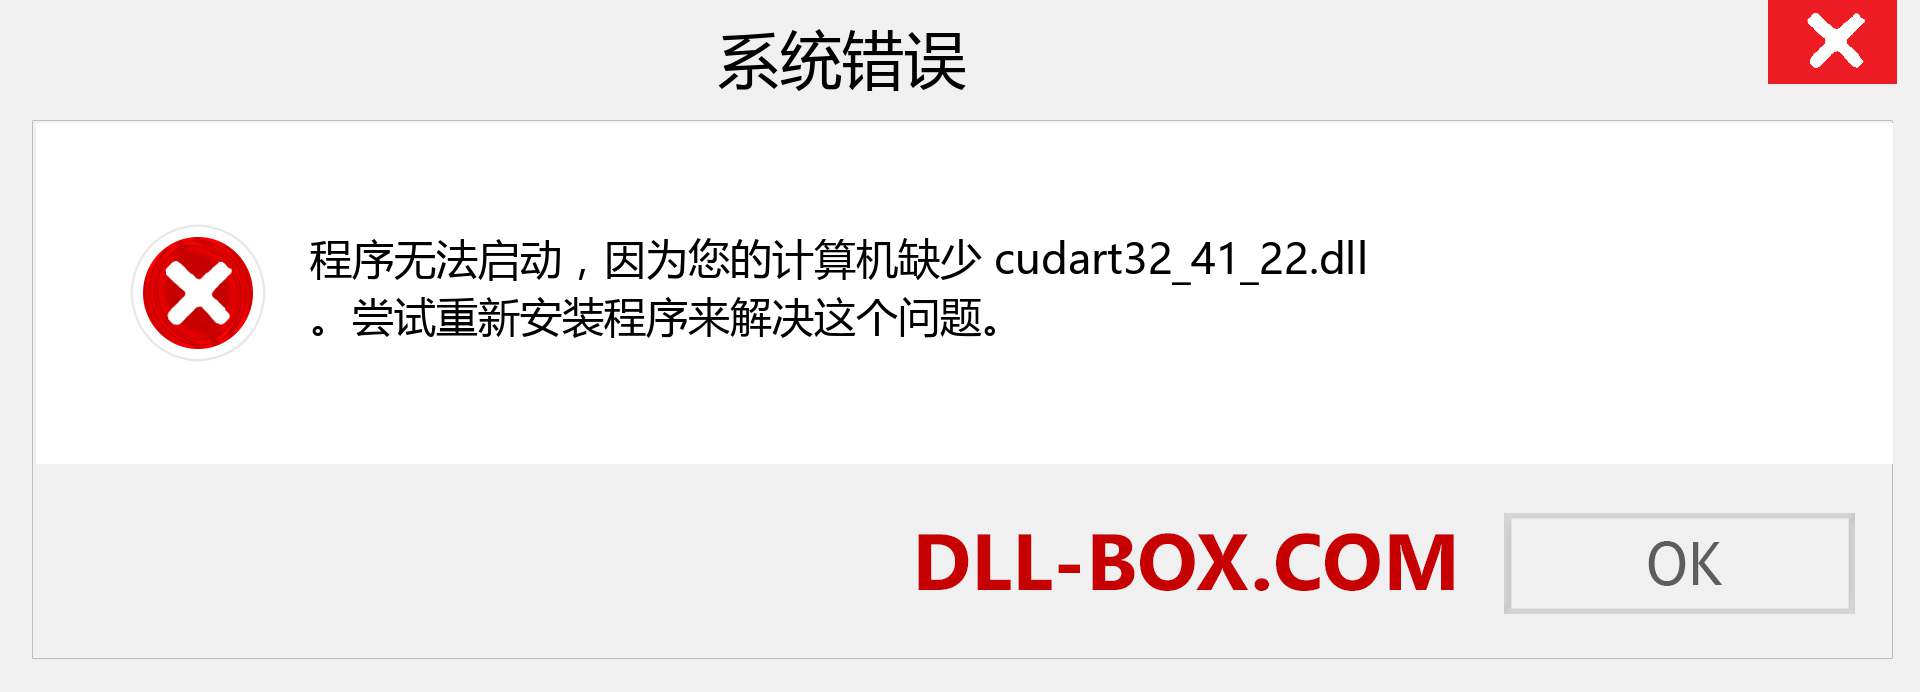 cudart32_41_22.dll 文件丢失？。 适用于 Windows 7、8、10 的下载 - 修复 Windows、照片、图像上的 cudart32_41_22 dll 丢失错误